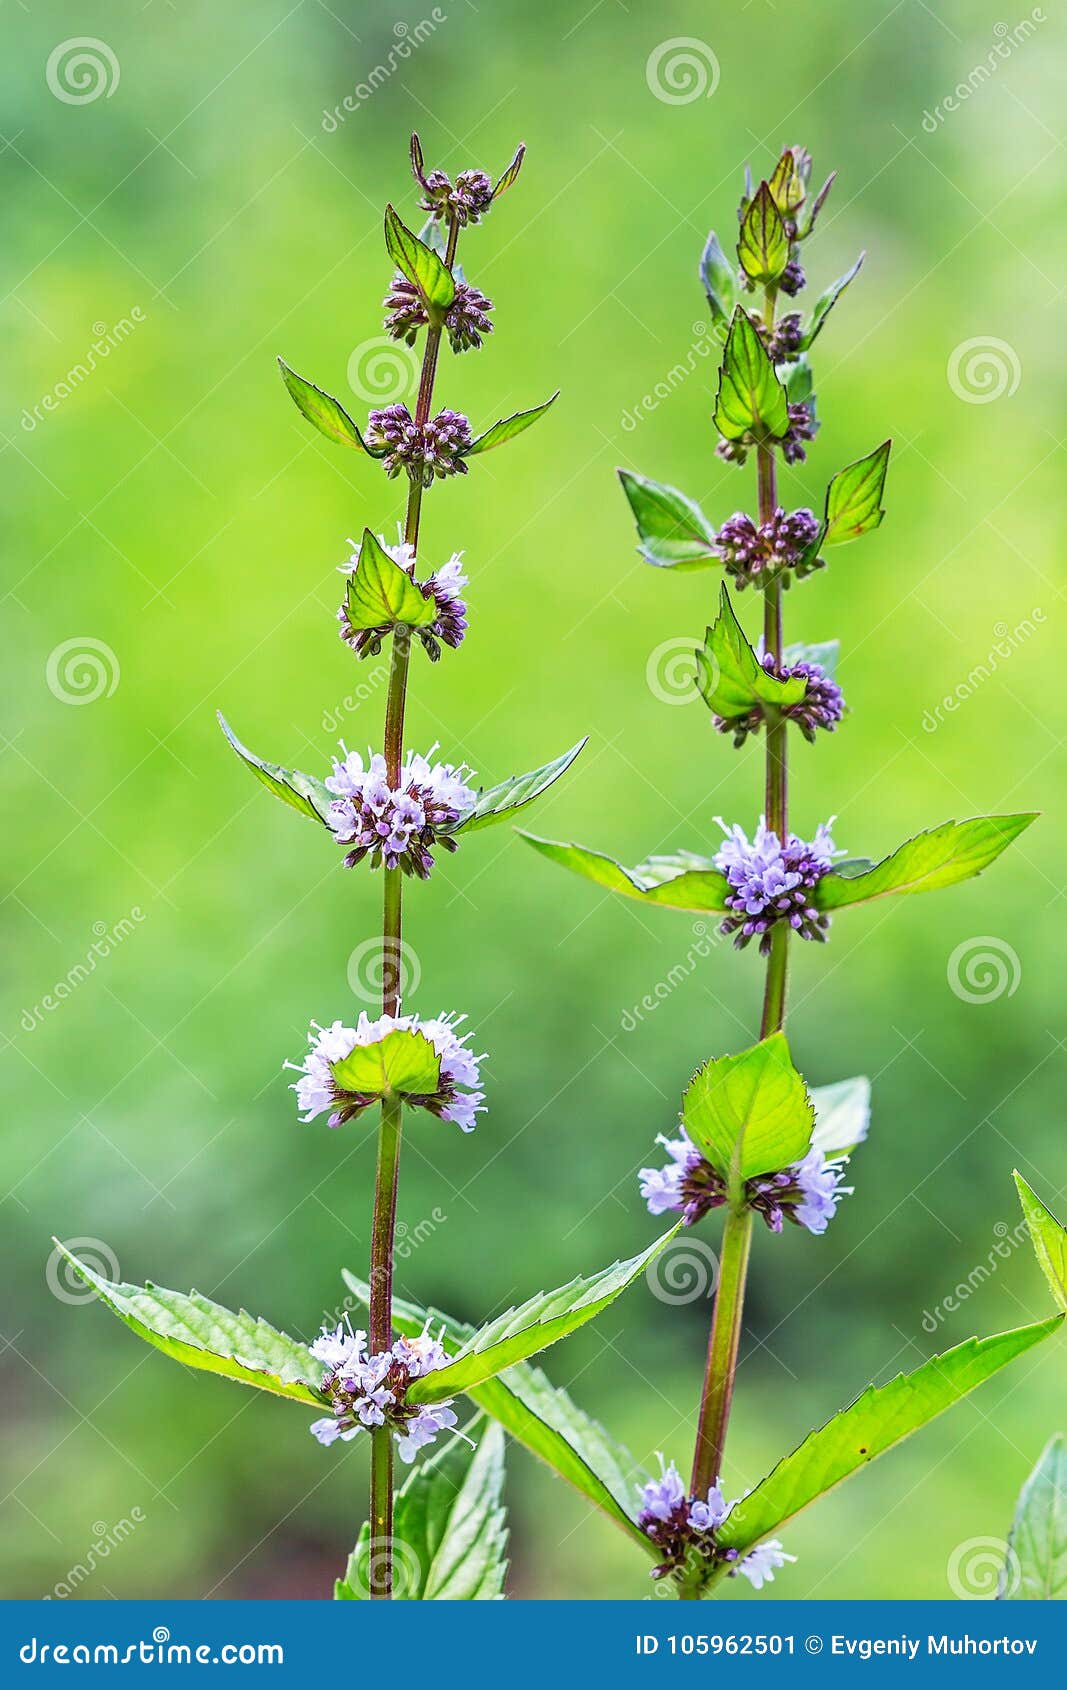 field mint or wild mint lat. mentha arvensis